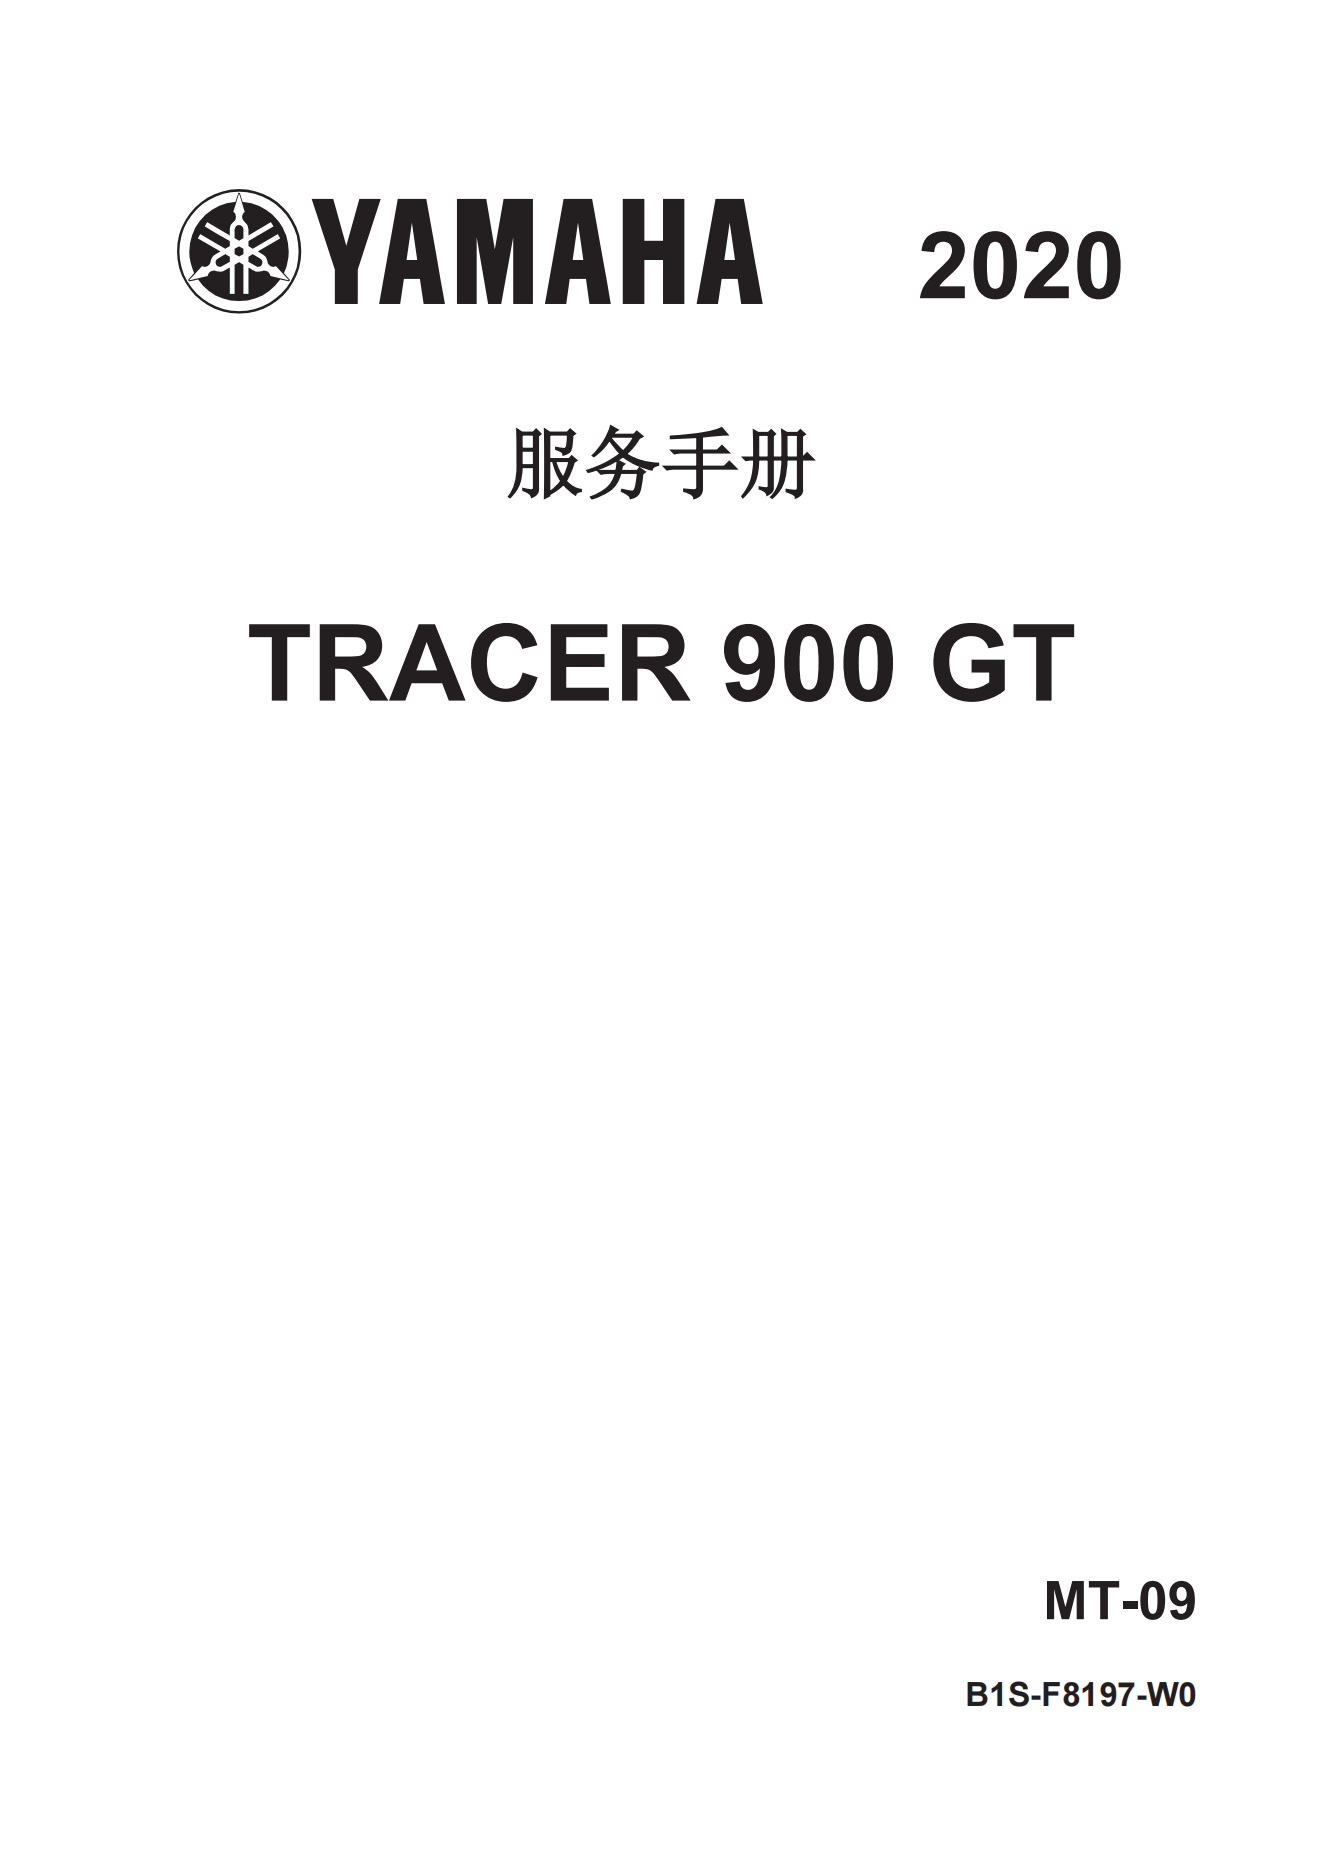 简体中文2019-2020年雅马哈tracer900GT维修手册插图